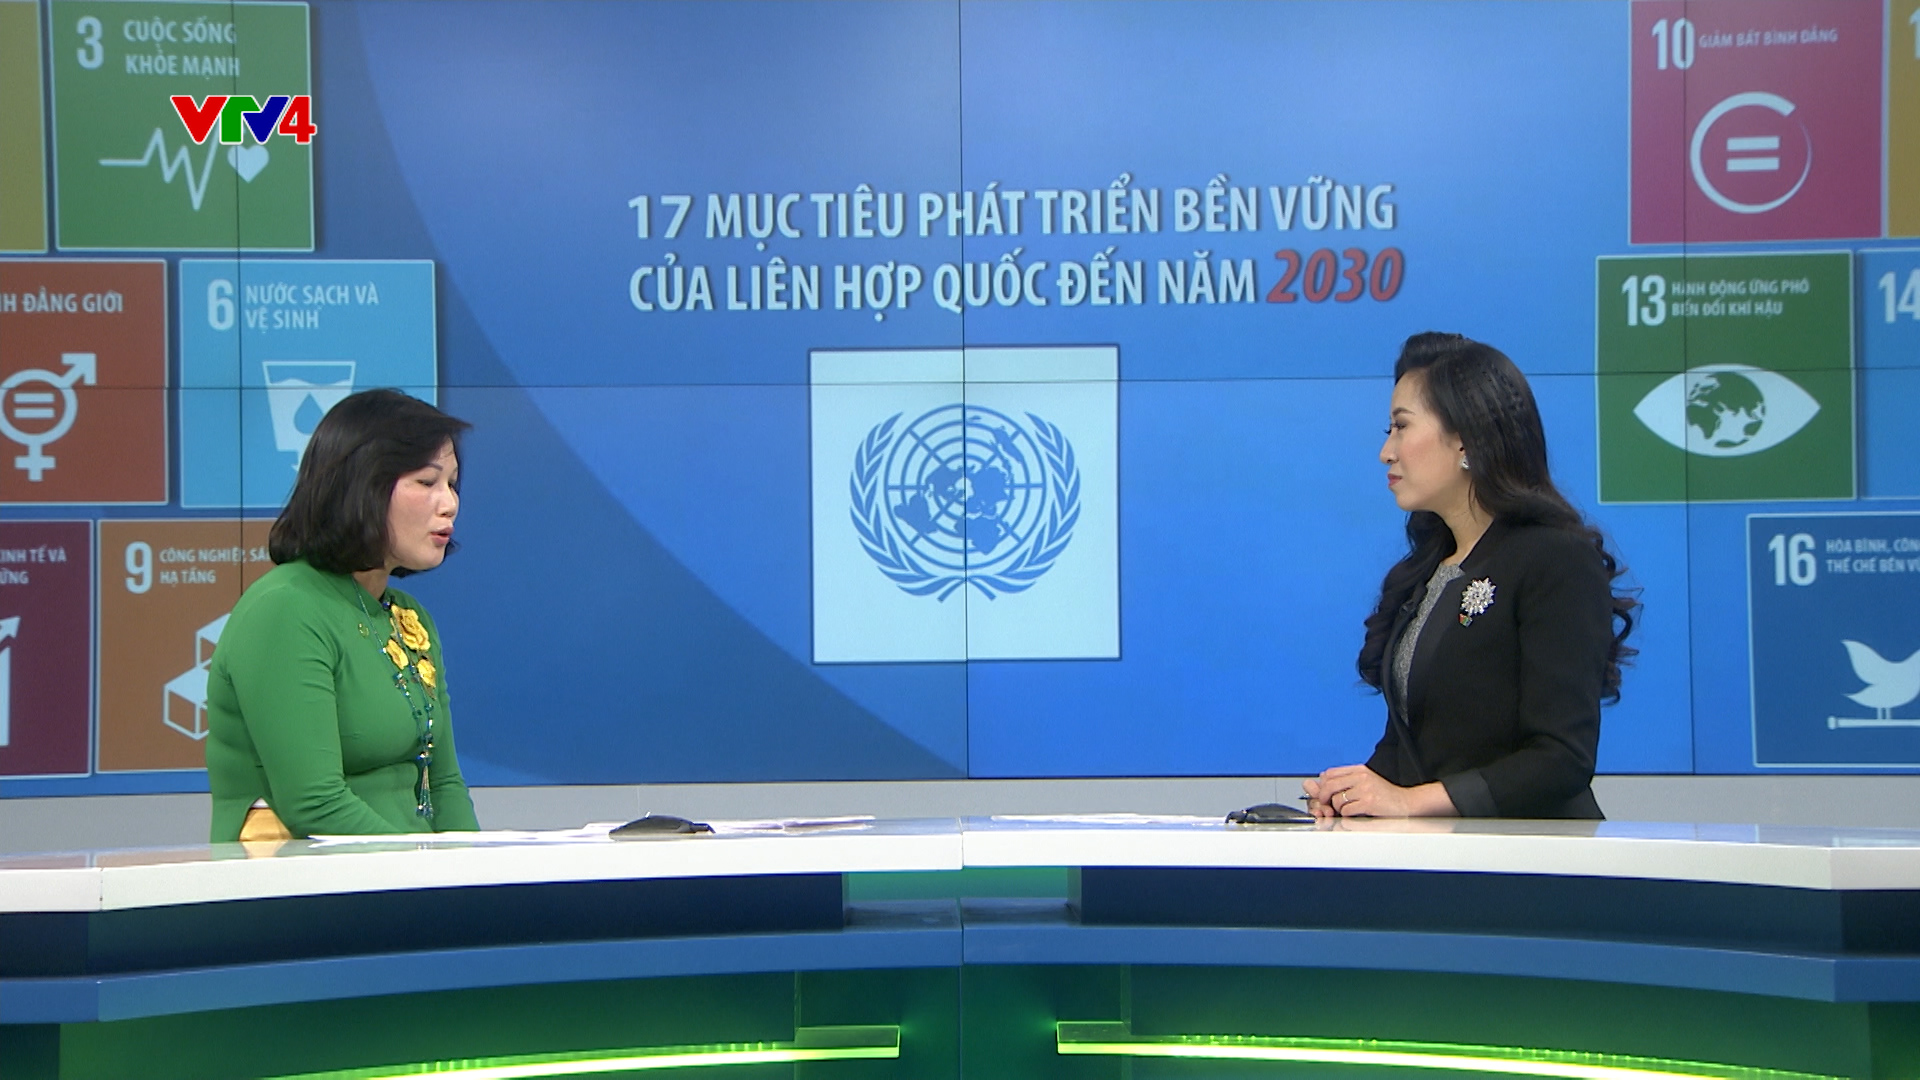 Ngành chăn nuôi Việt Nam đóng góp tích cực vào mục tiêu phát triển bền vững của Liên Hợp Quốc